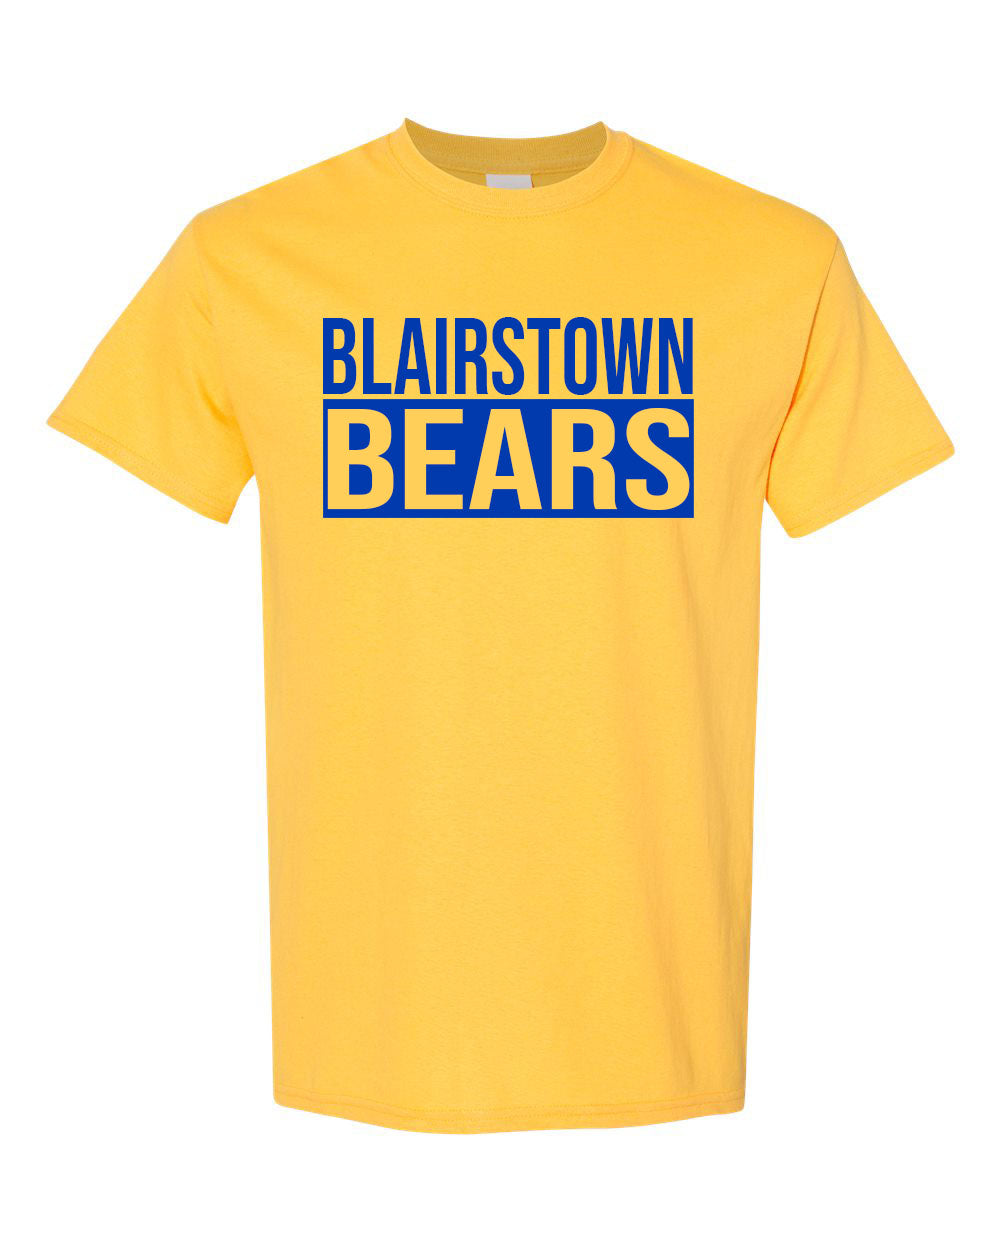 Bears design 12 t-Shirt